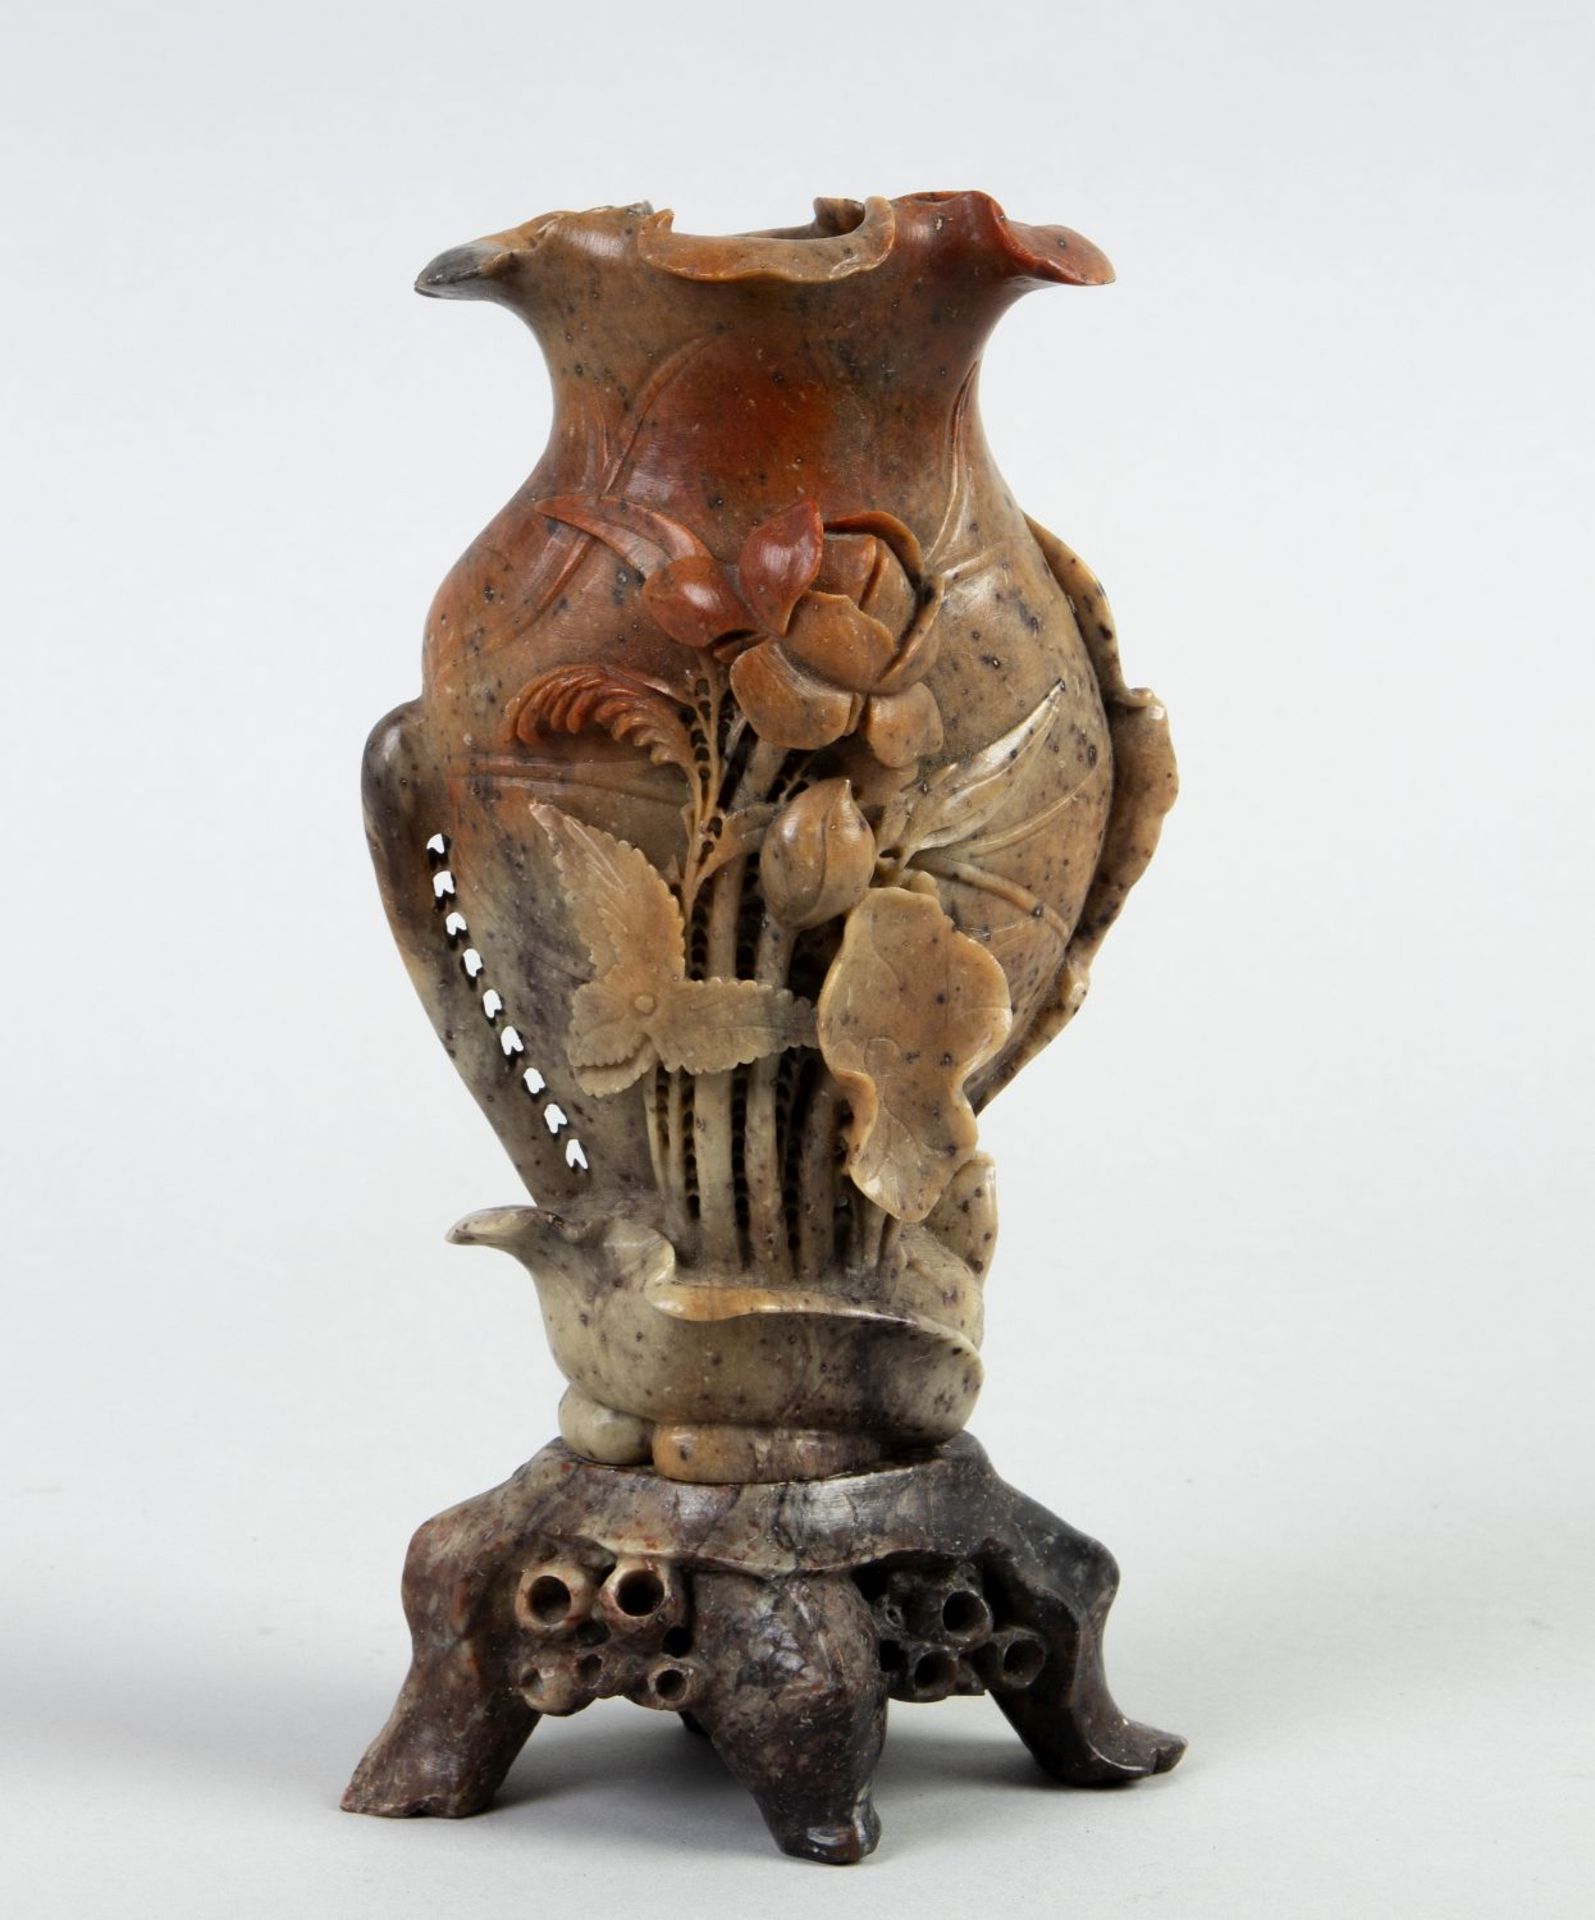 Vase auf Sockel Speckstein, geschnitzt. Mit plastisch gearbeiteter Blüte verziert. China. H. 21,5 cm